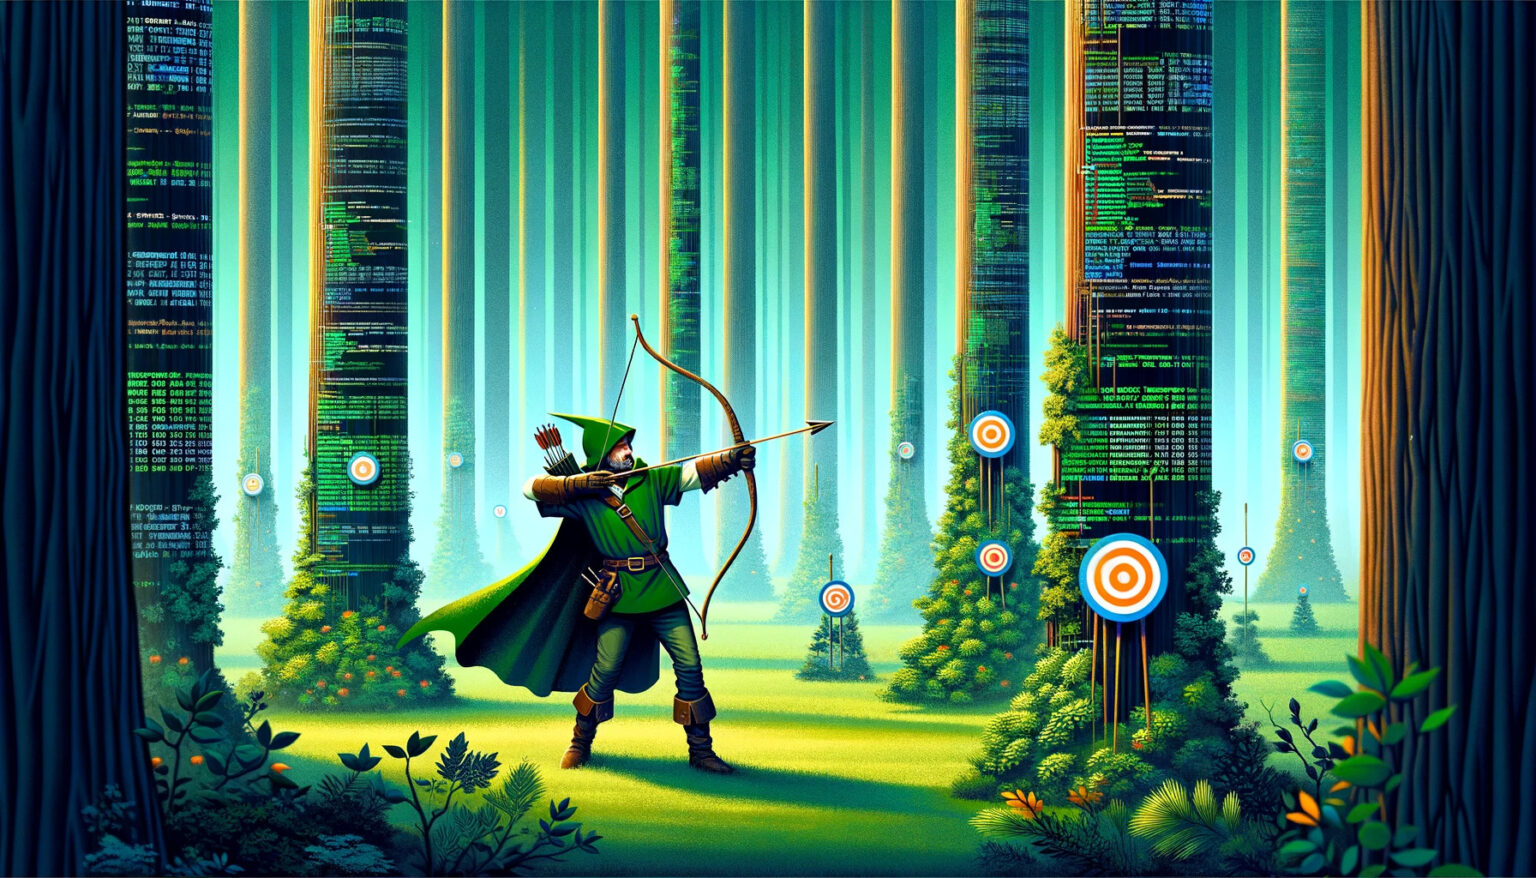 Robin Hood zielt in einem digitalen Wald auf ein Ziel, umgeben von jungen digitalen Sämlingen.